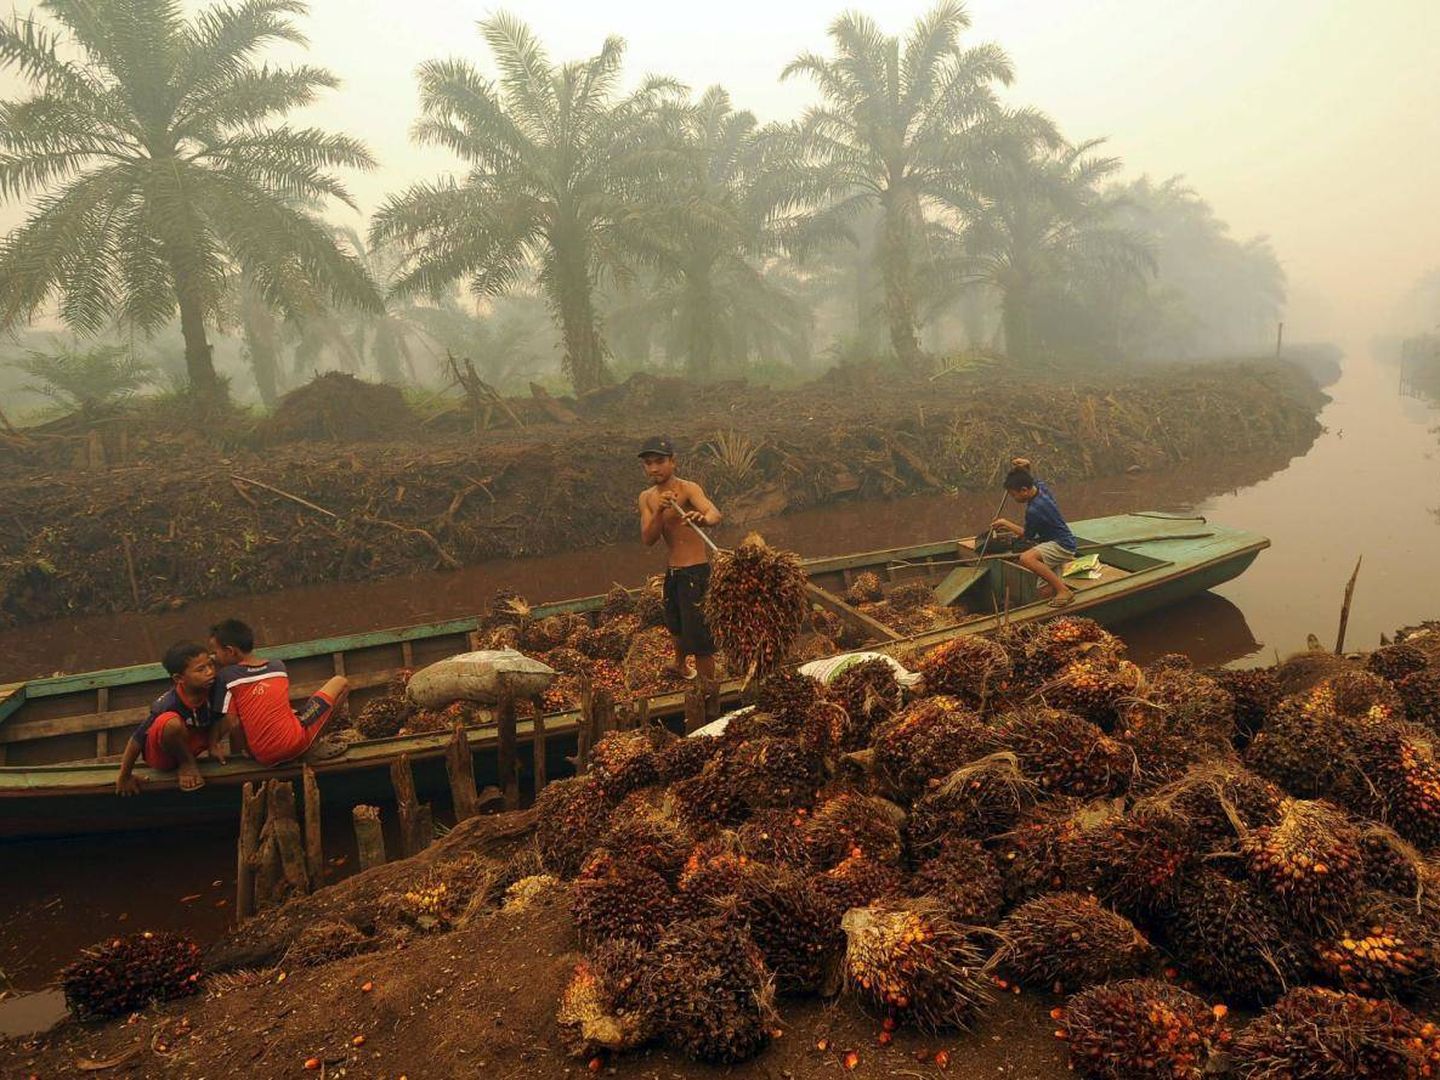 Trabajadores descargan frutos en una plantación de aceite de palma en Sumatra. (Reuters)